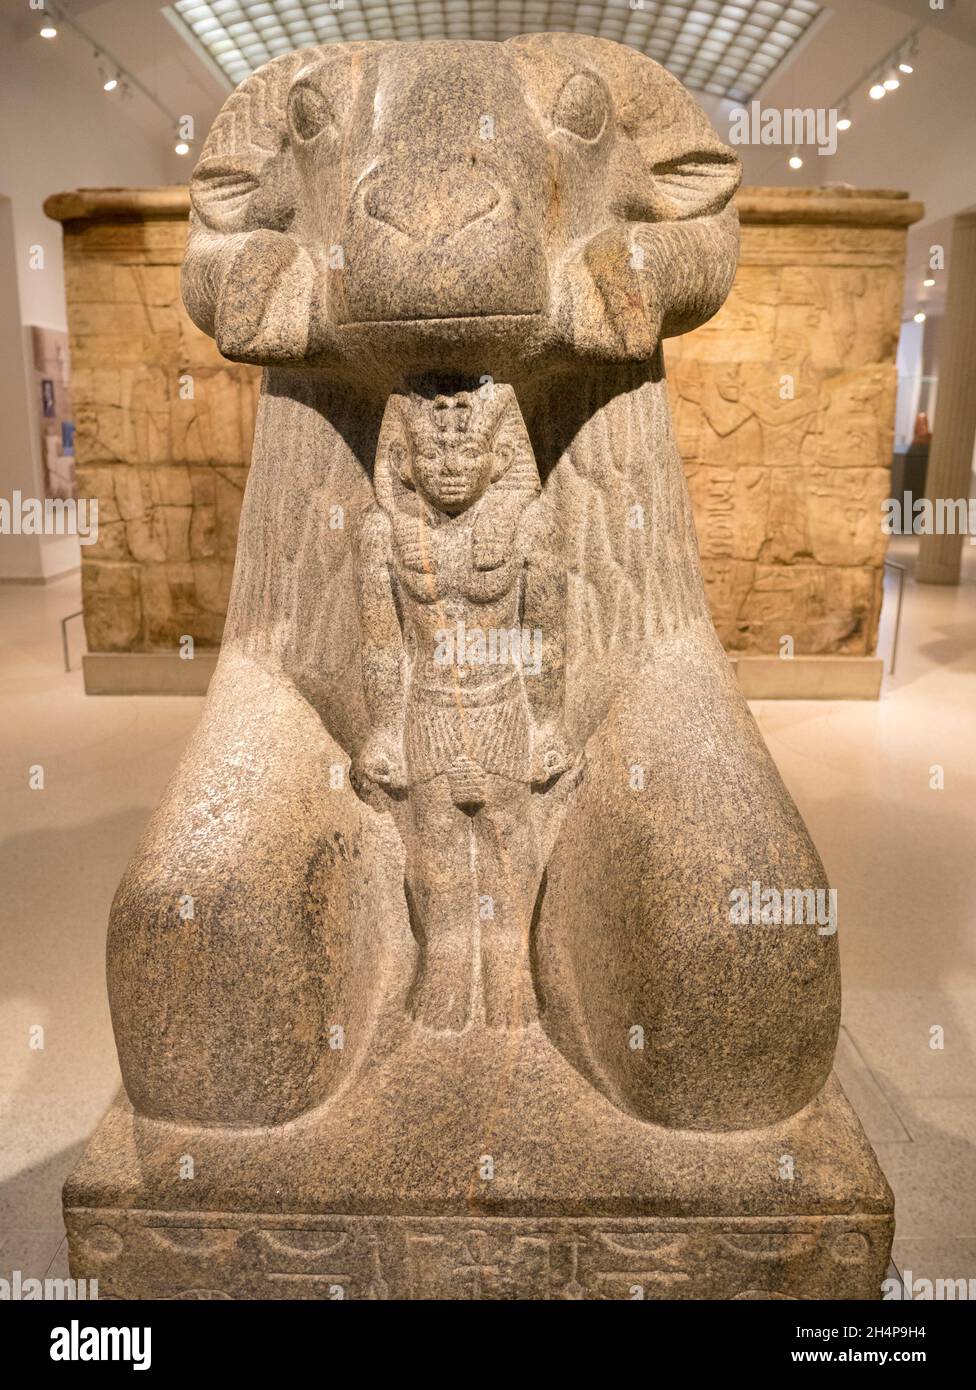 Skulptur des ägyptischen gottes Amun, mit Widder, ausgestellt im Ashmolean Museum. Amun ist der altägyptische gott der Sonne und der Luft und einer der m Stockfoto